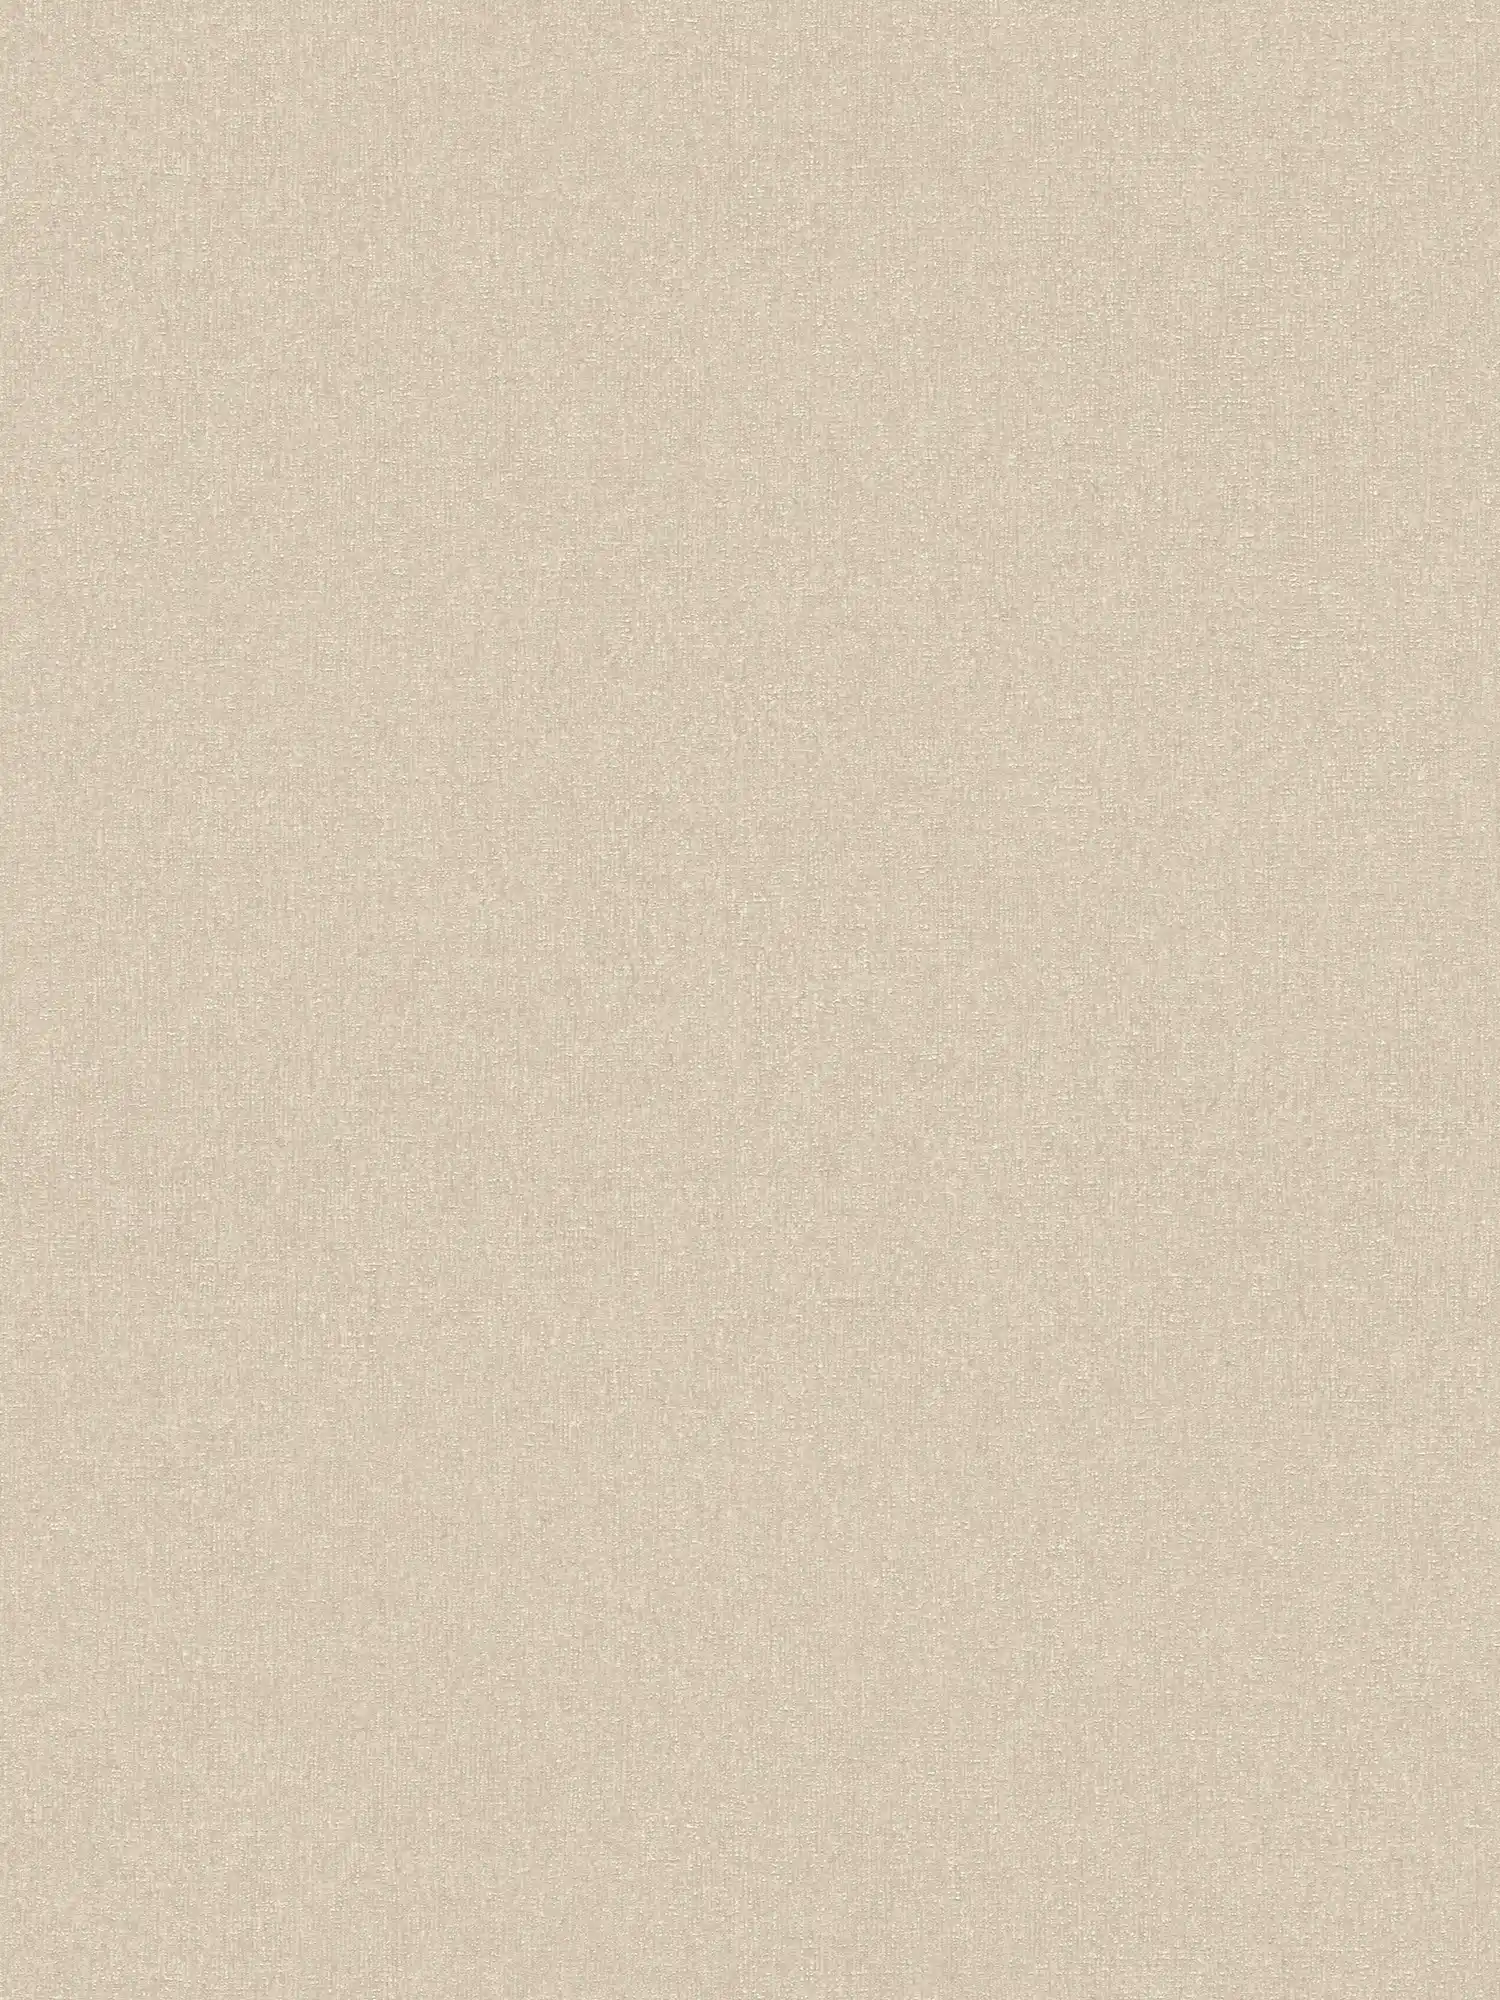 Papier peint intissé uni à structure fine - beige
